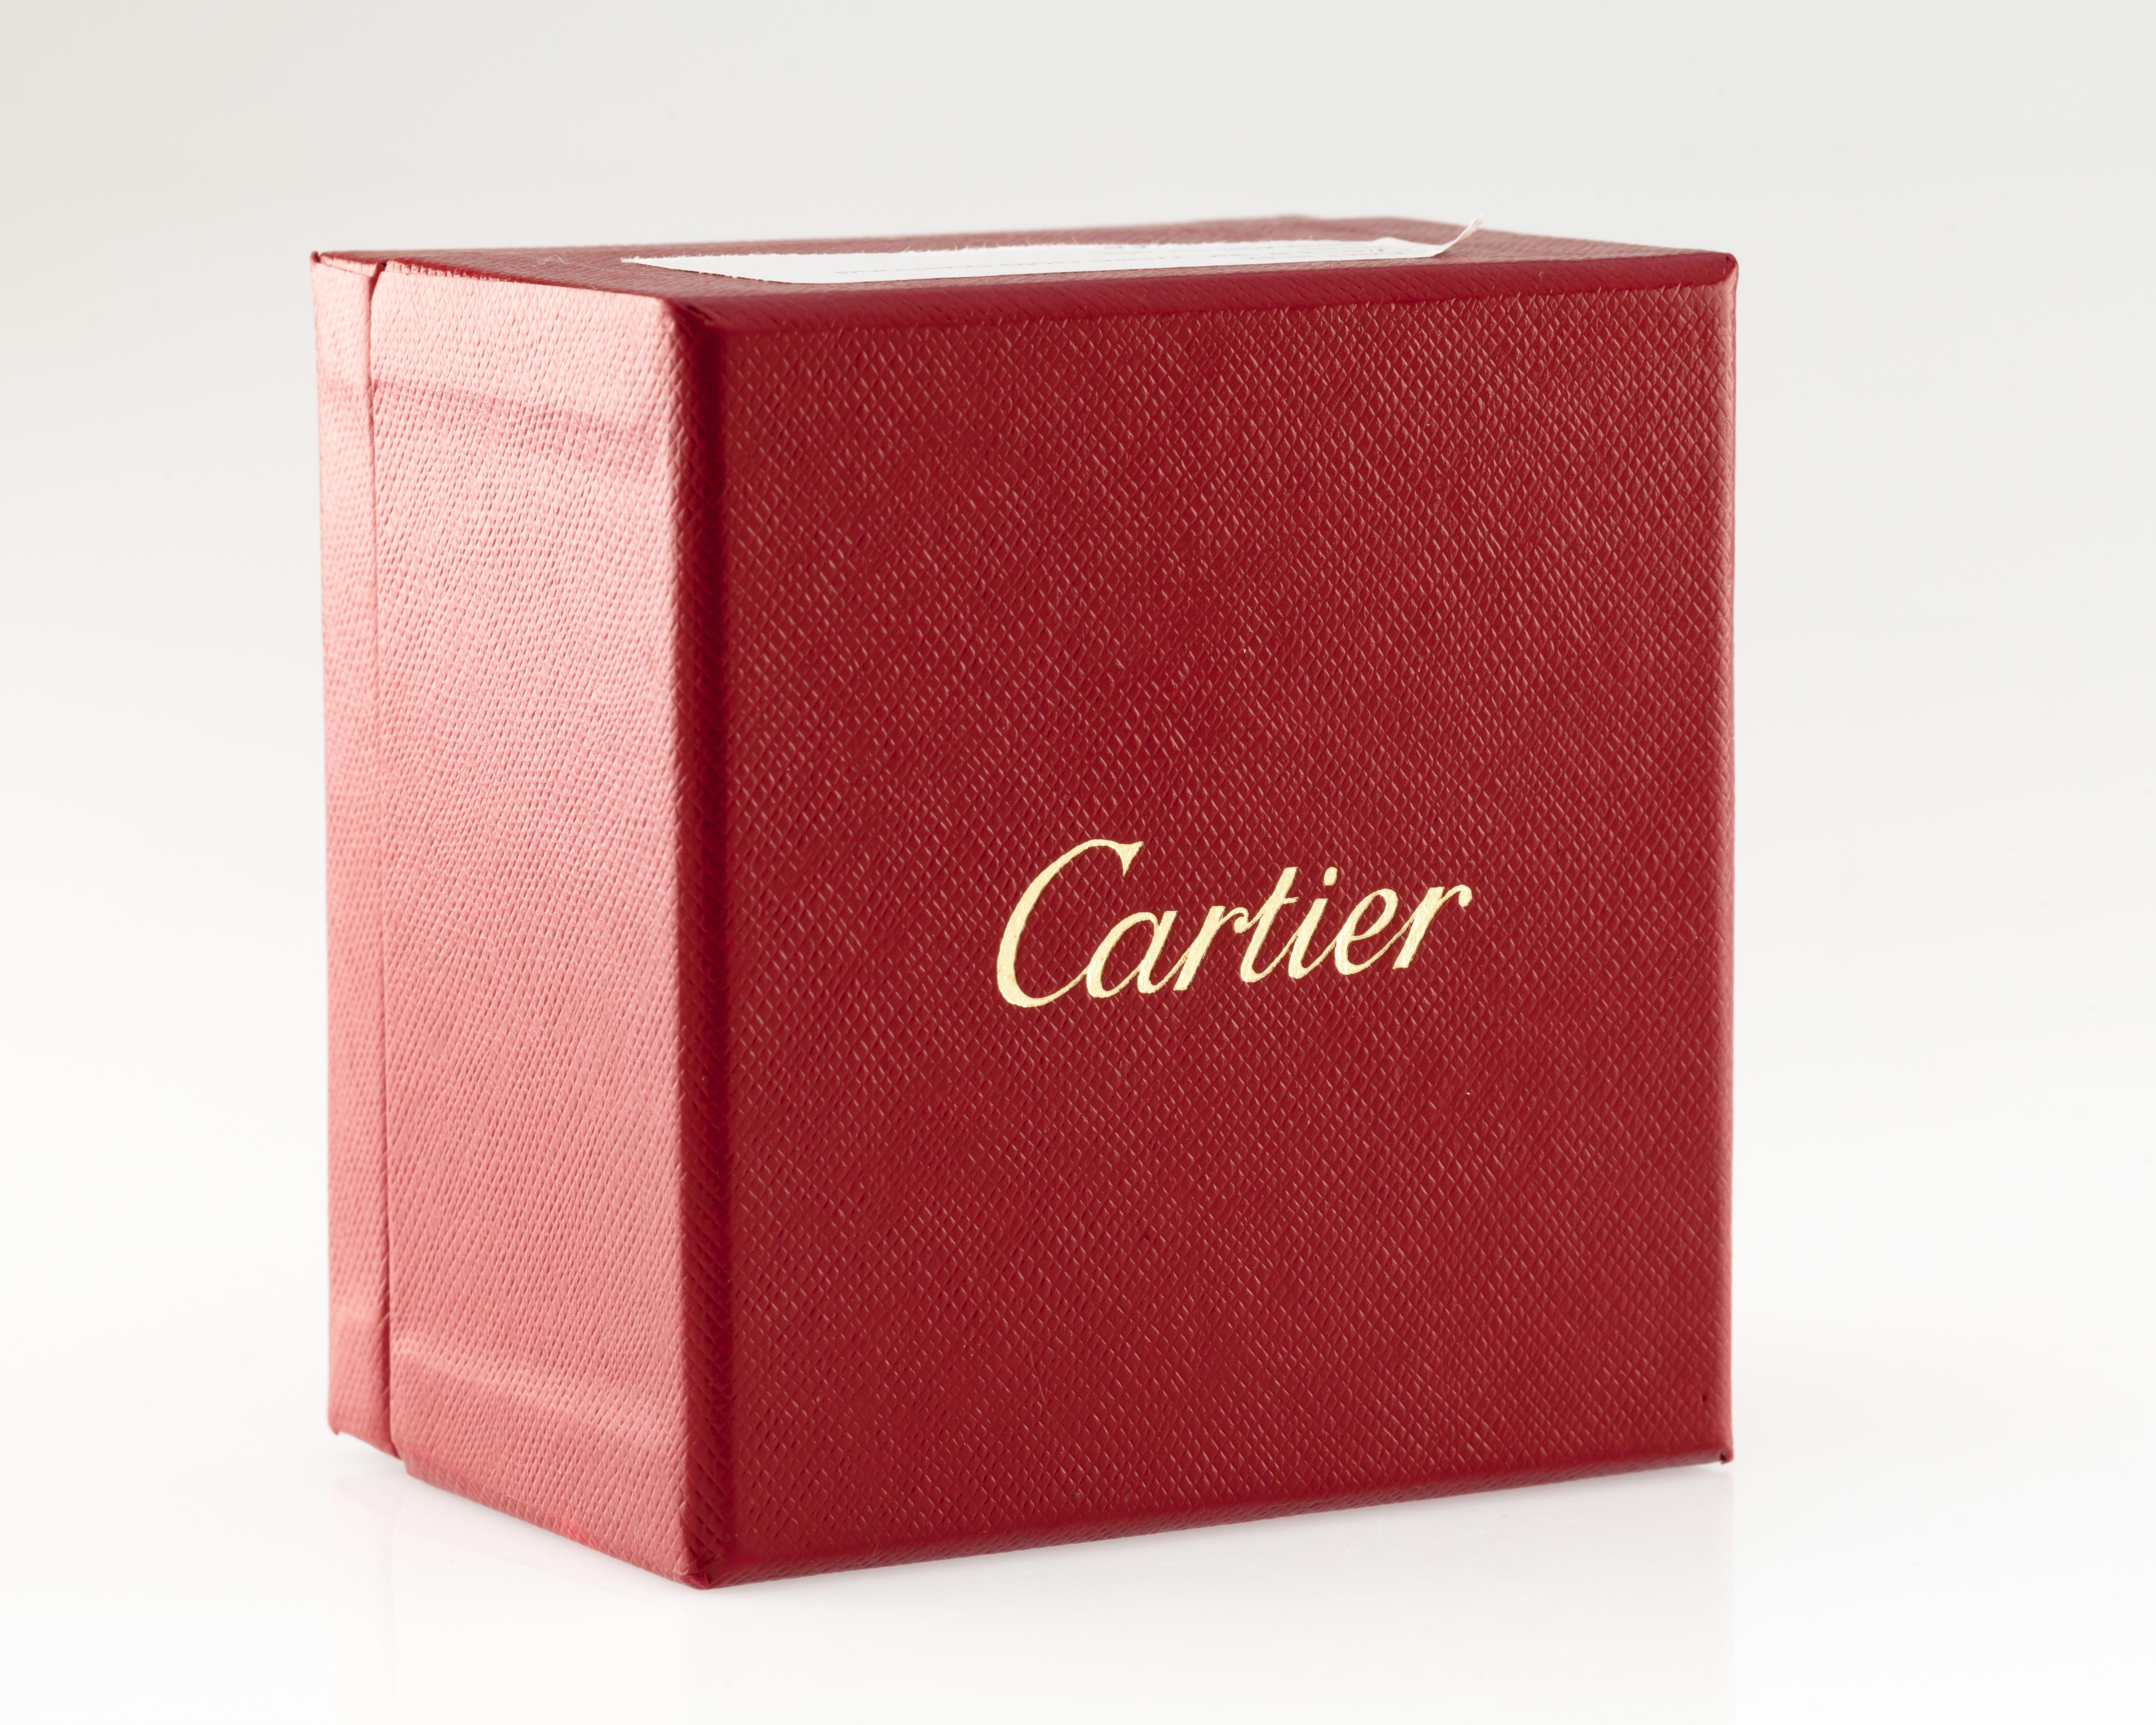 cartier original box